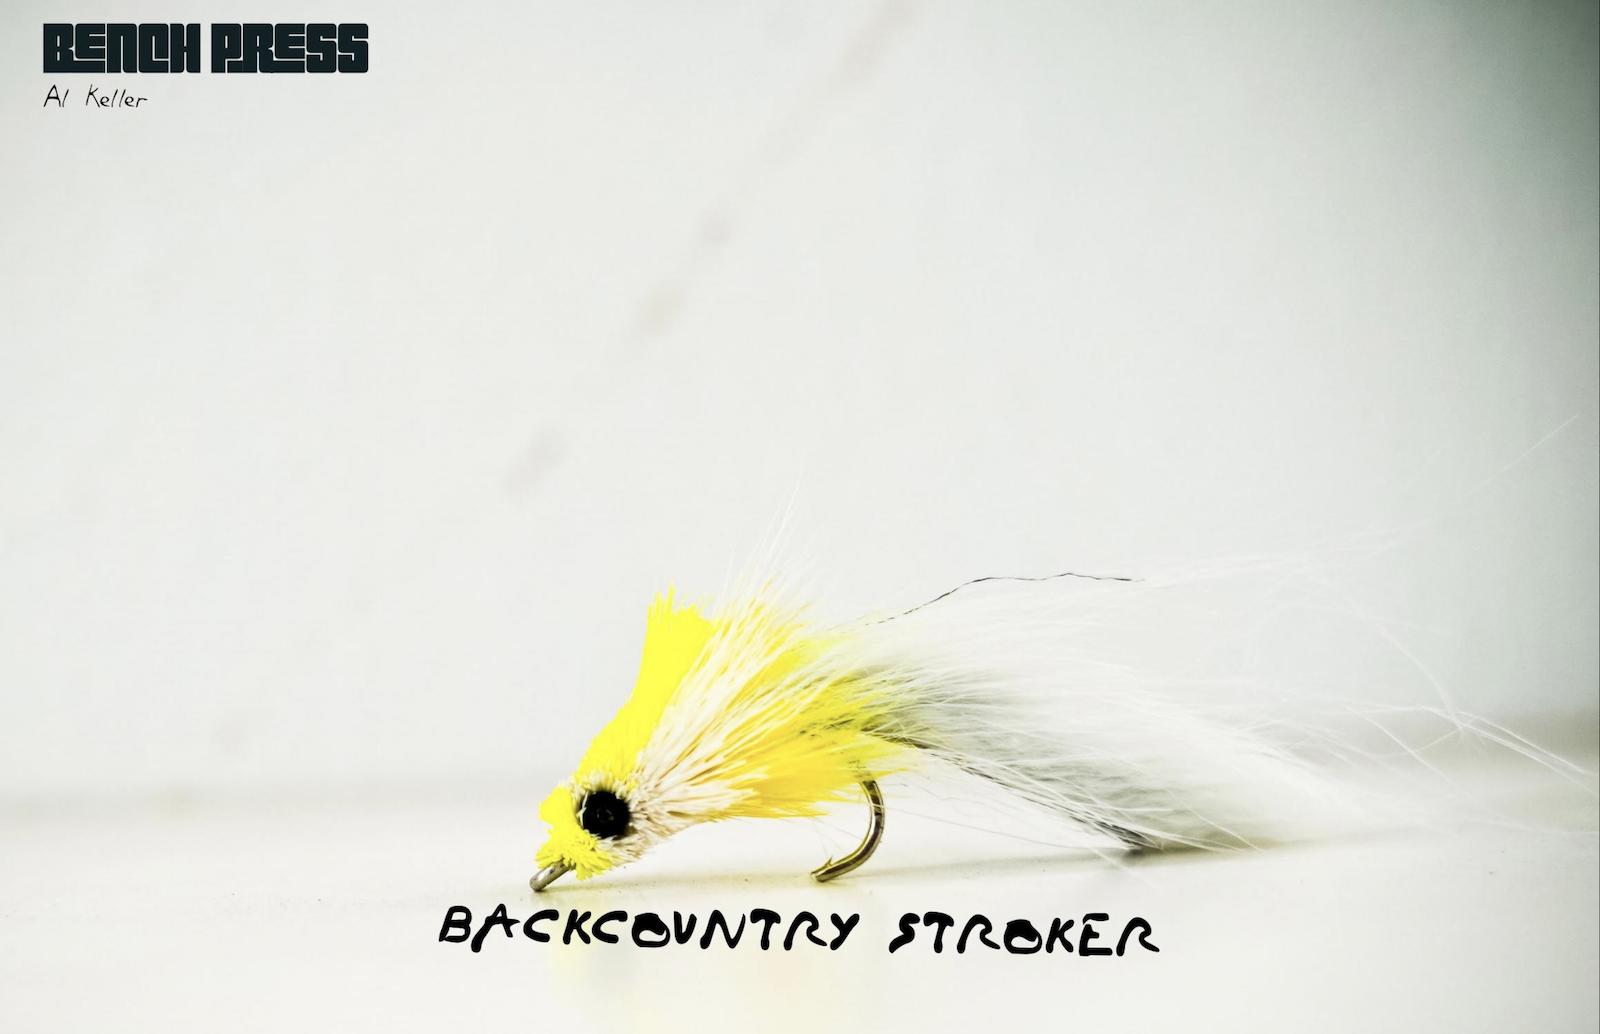 Backcountry Stroker